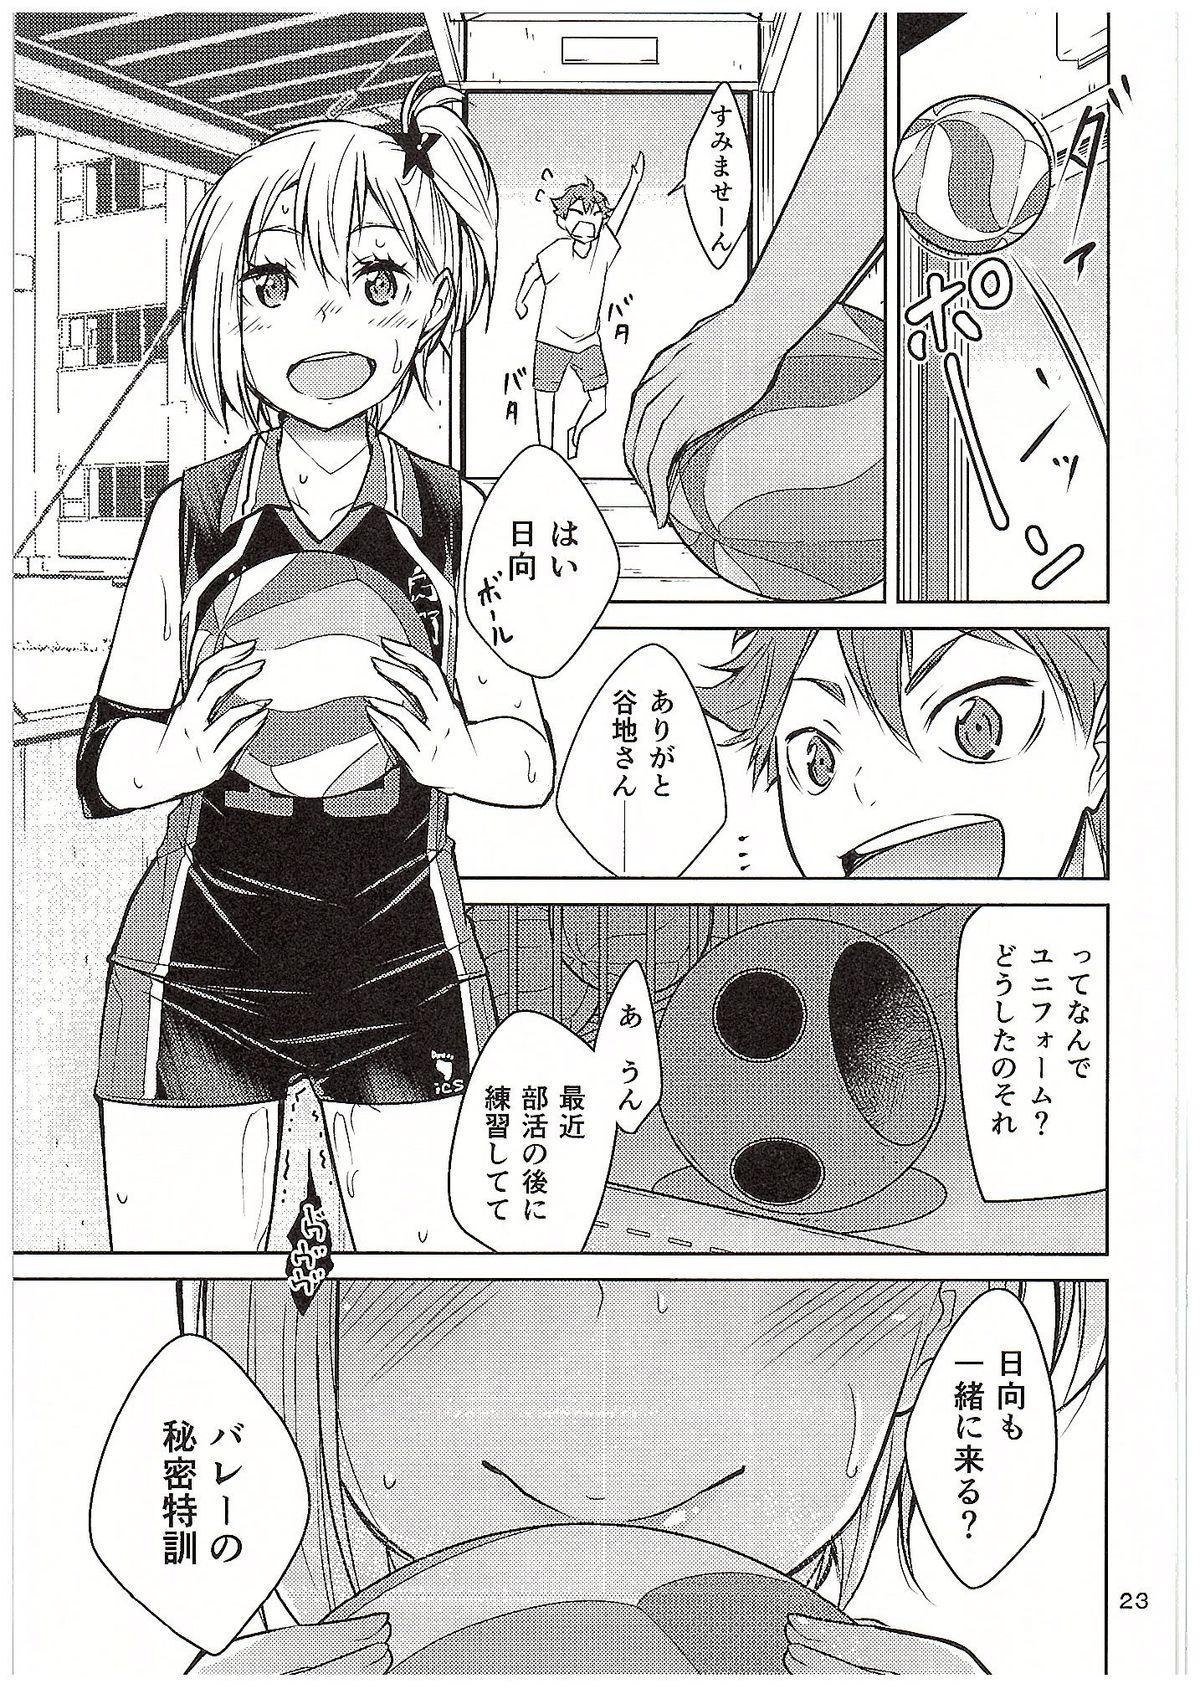 Clit Moeyo! Karasuno Volleyball Shinzenjiai - Haikyuu Por - Page 22